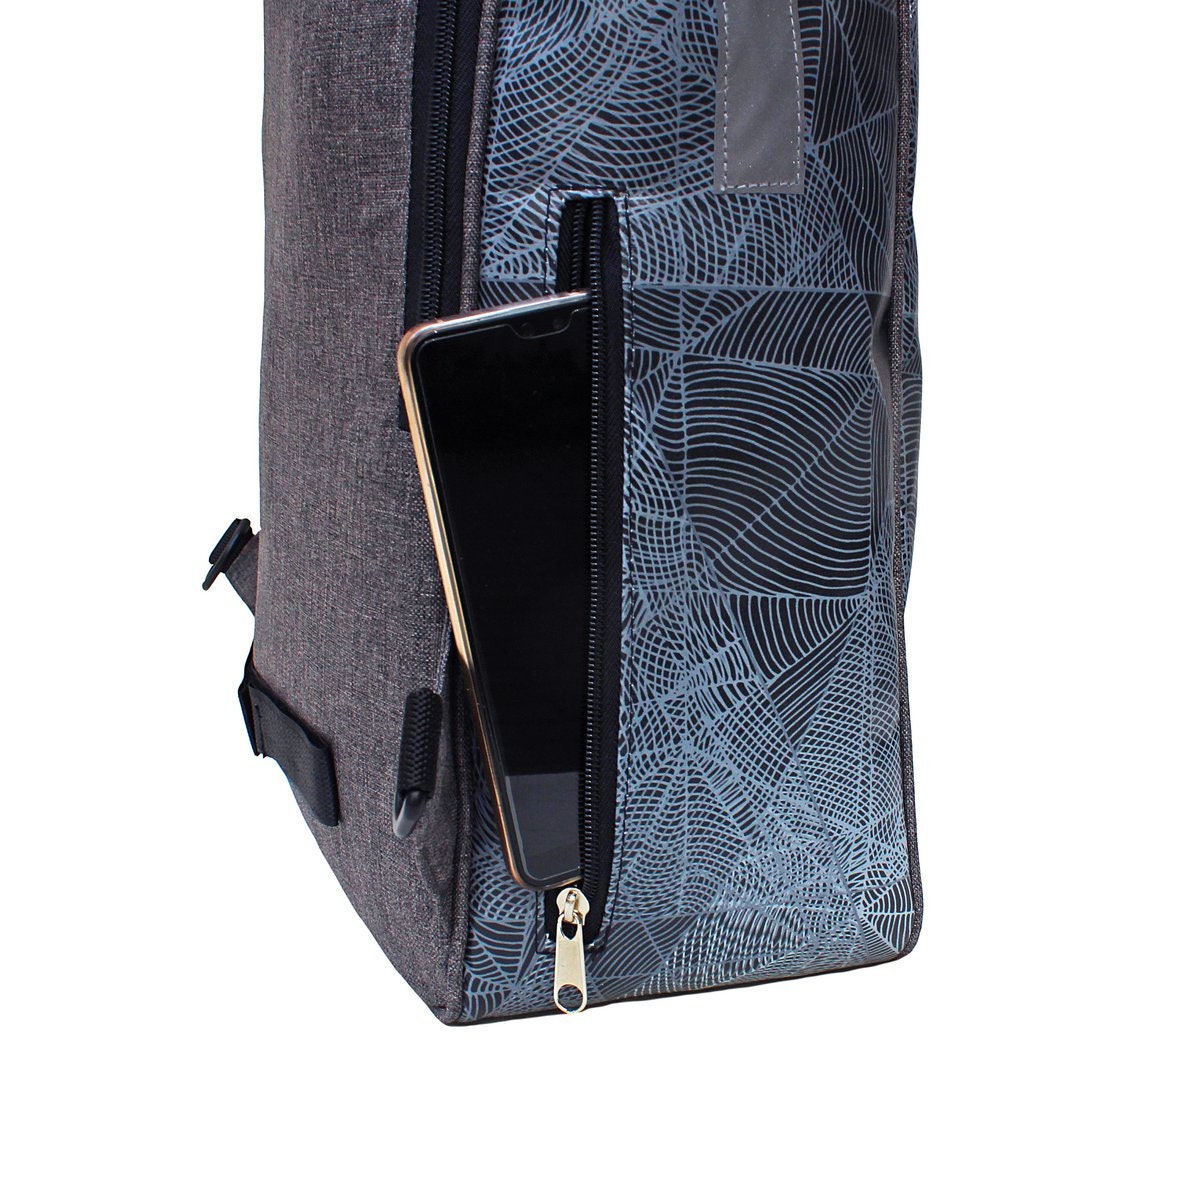 IKURI KOMBI Fahrradtasche / Rucksack mit Befestigung Wasserdicht Gepäcktasche Satteltasche Design Diamante